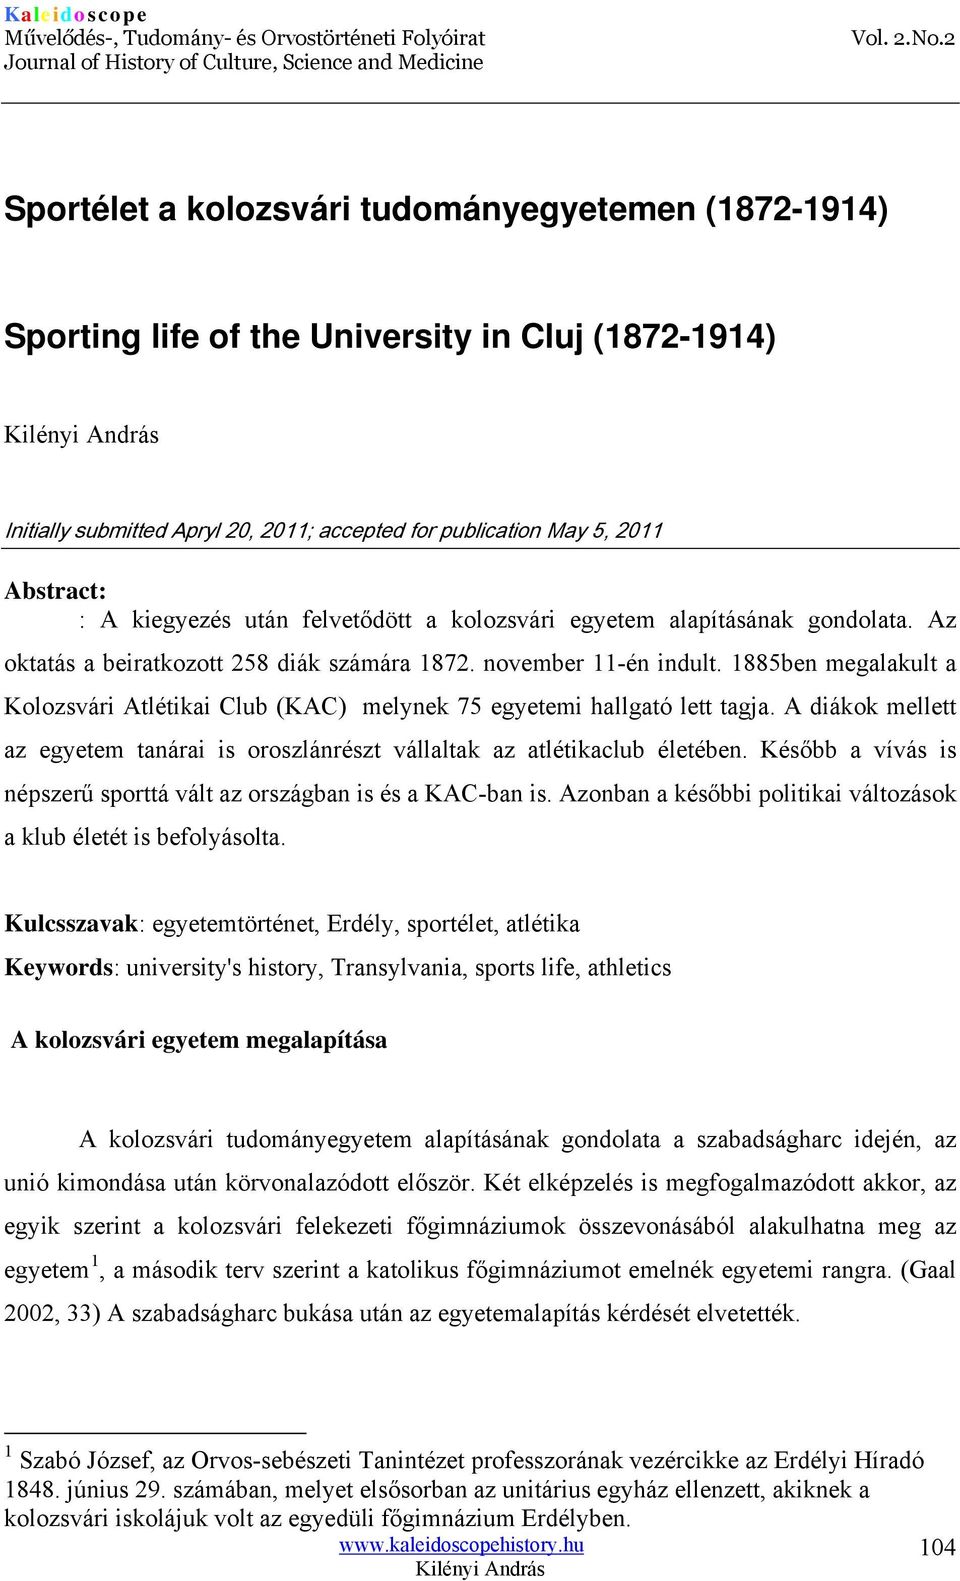 1885ben megalakult a Kolozsvári Atlétikai Club (KAC) melynek 75 egyetemi hallgató lett tagja. A diákok mellett az egyetem tanárai is oroszlánrészt vállaltak az atlétikaclub életében.